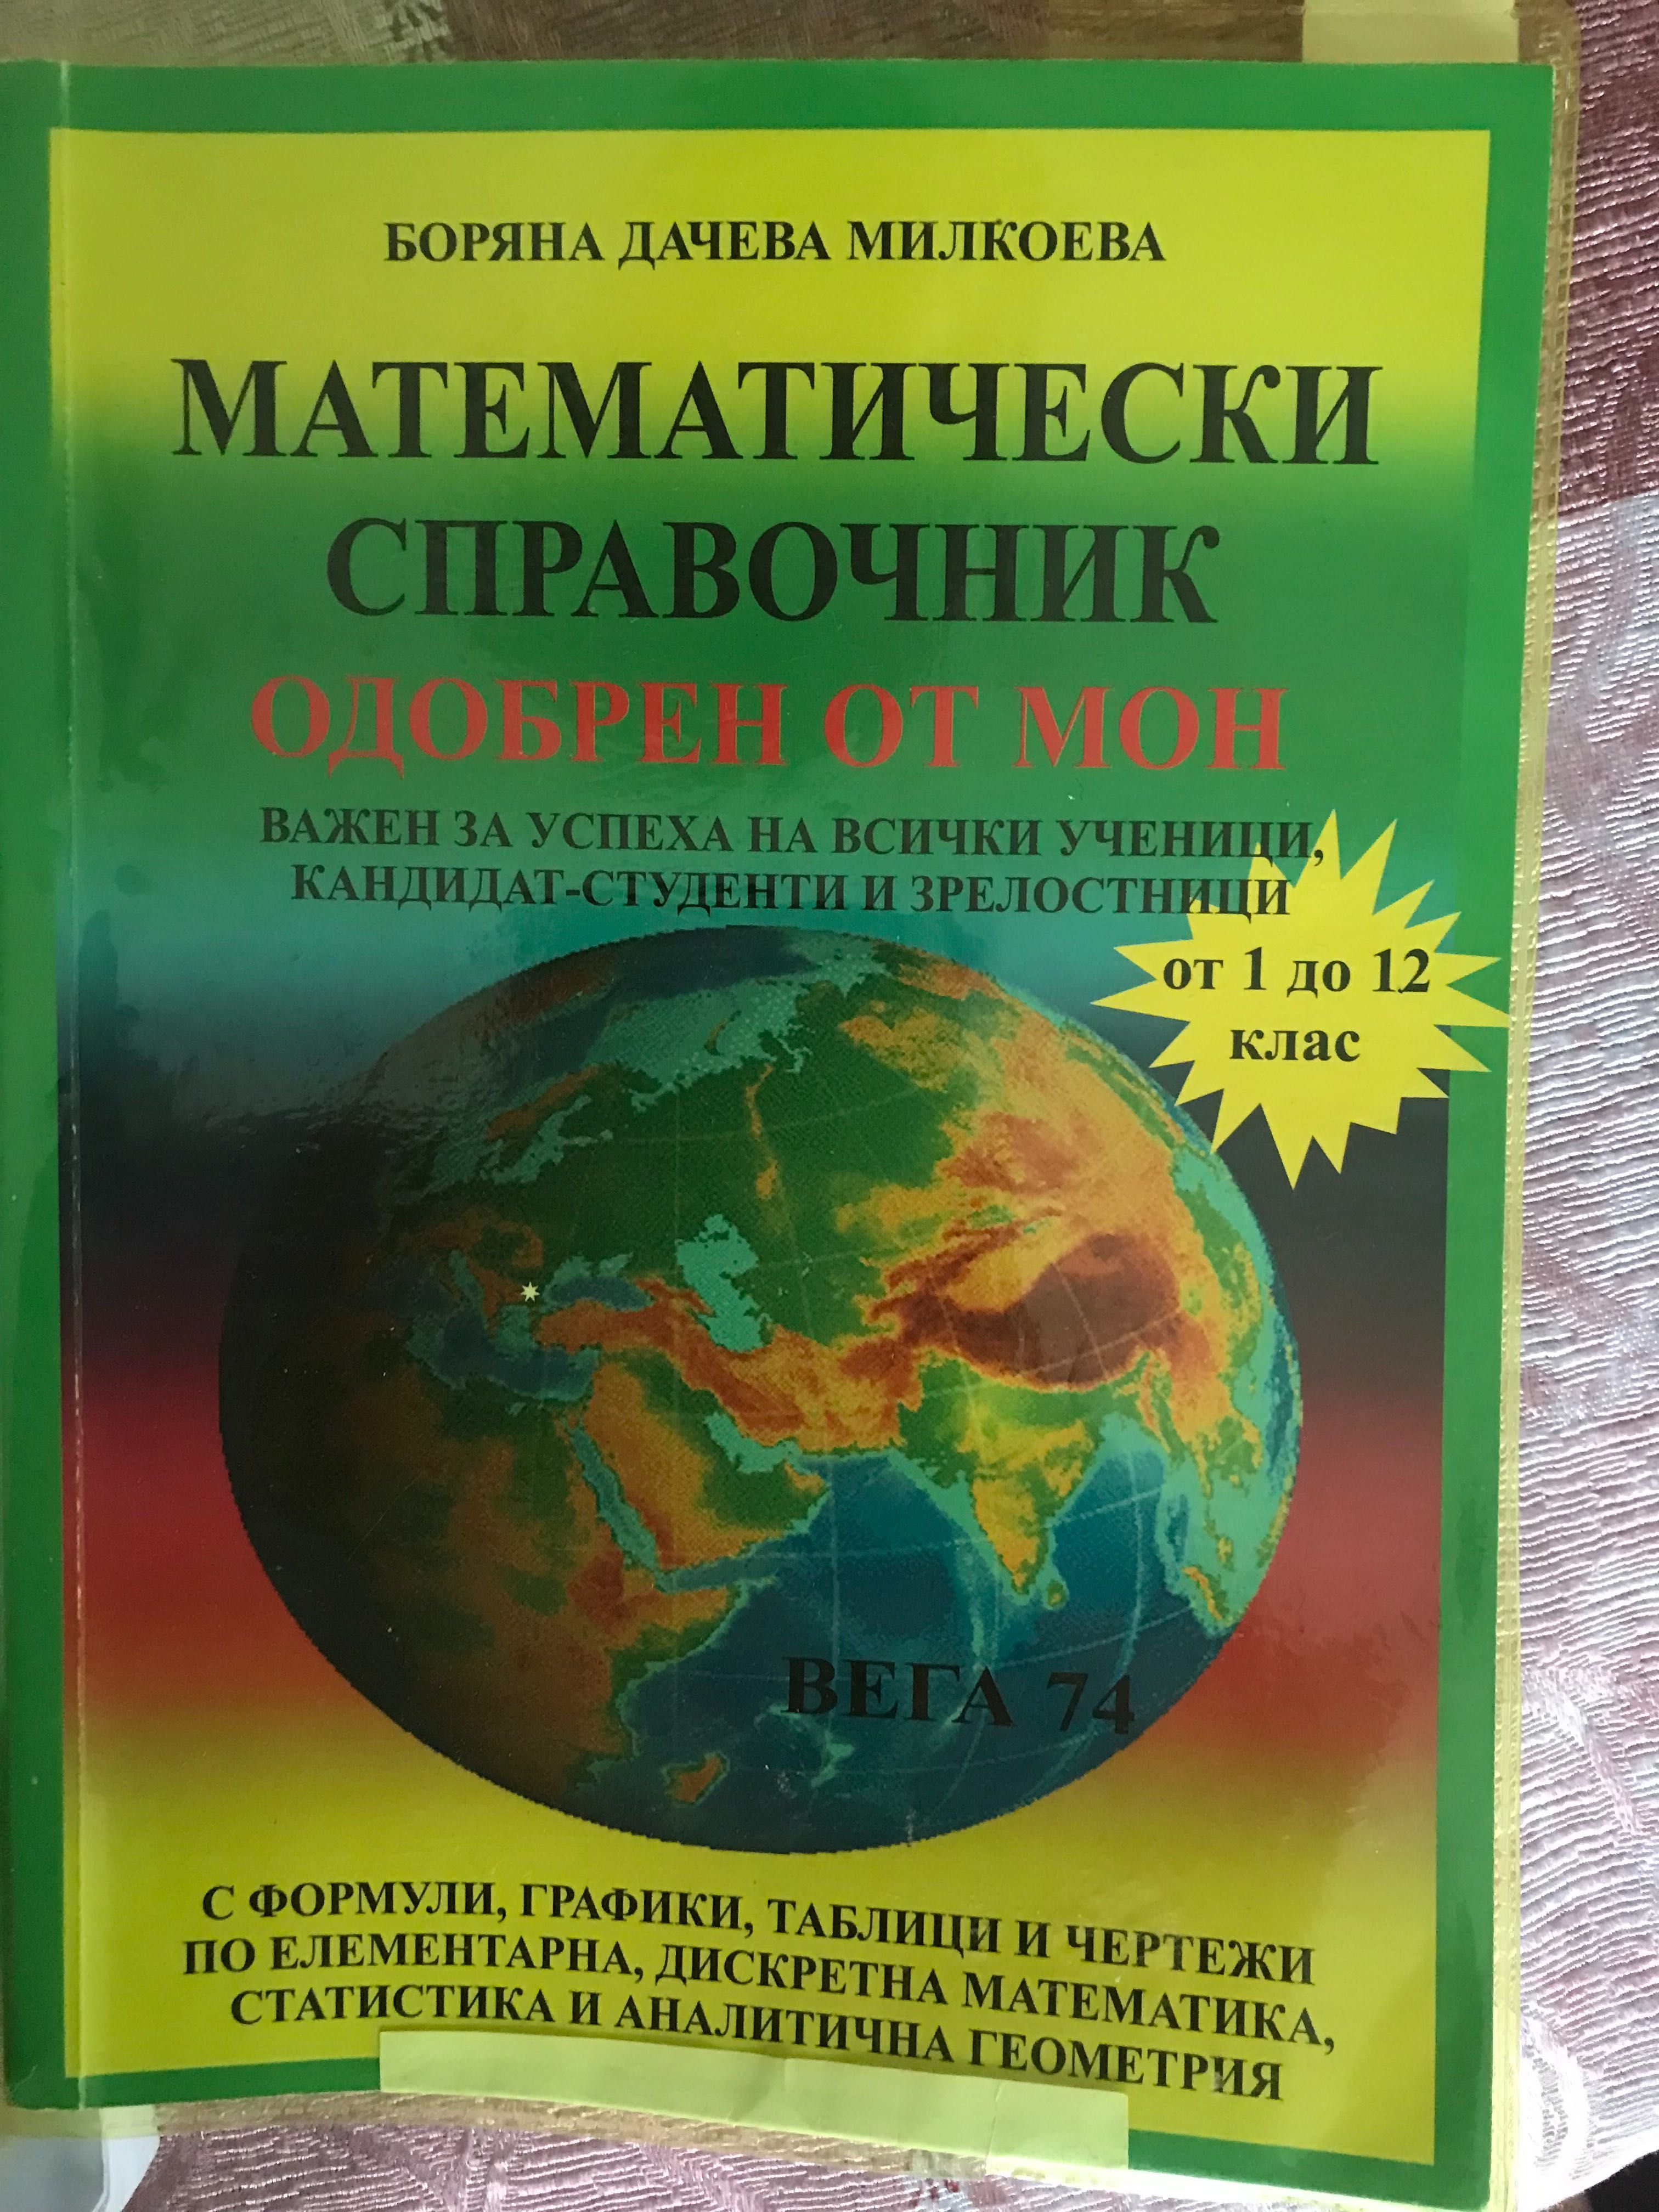 Учебници от 1 до 12 клас